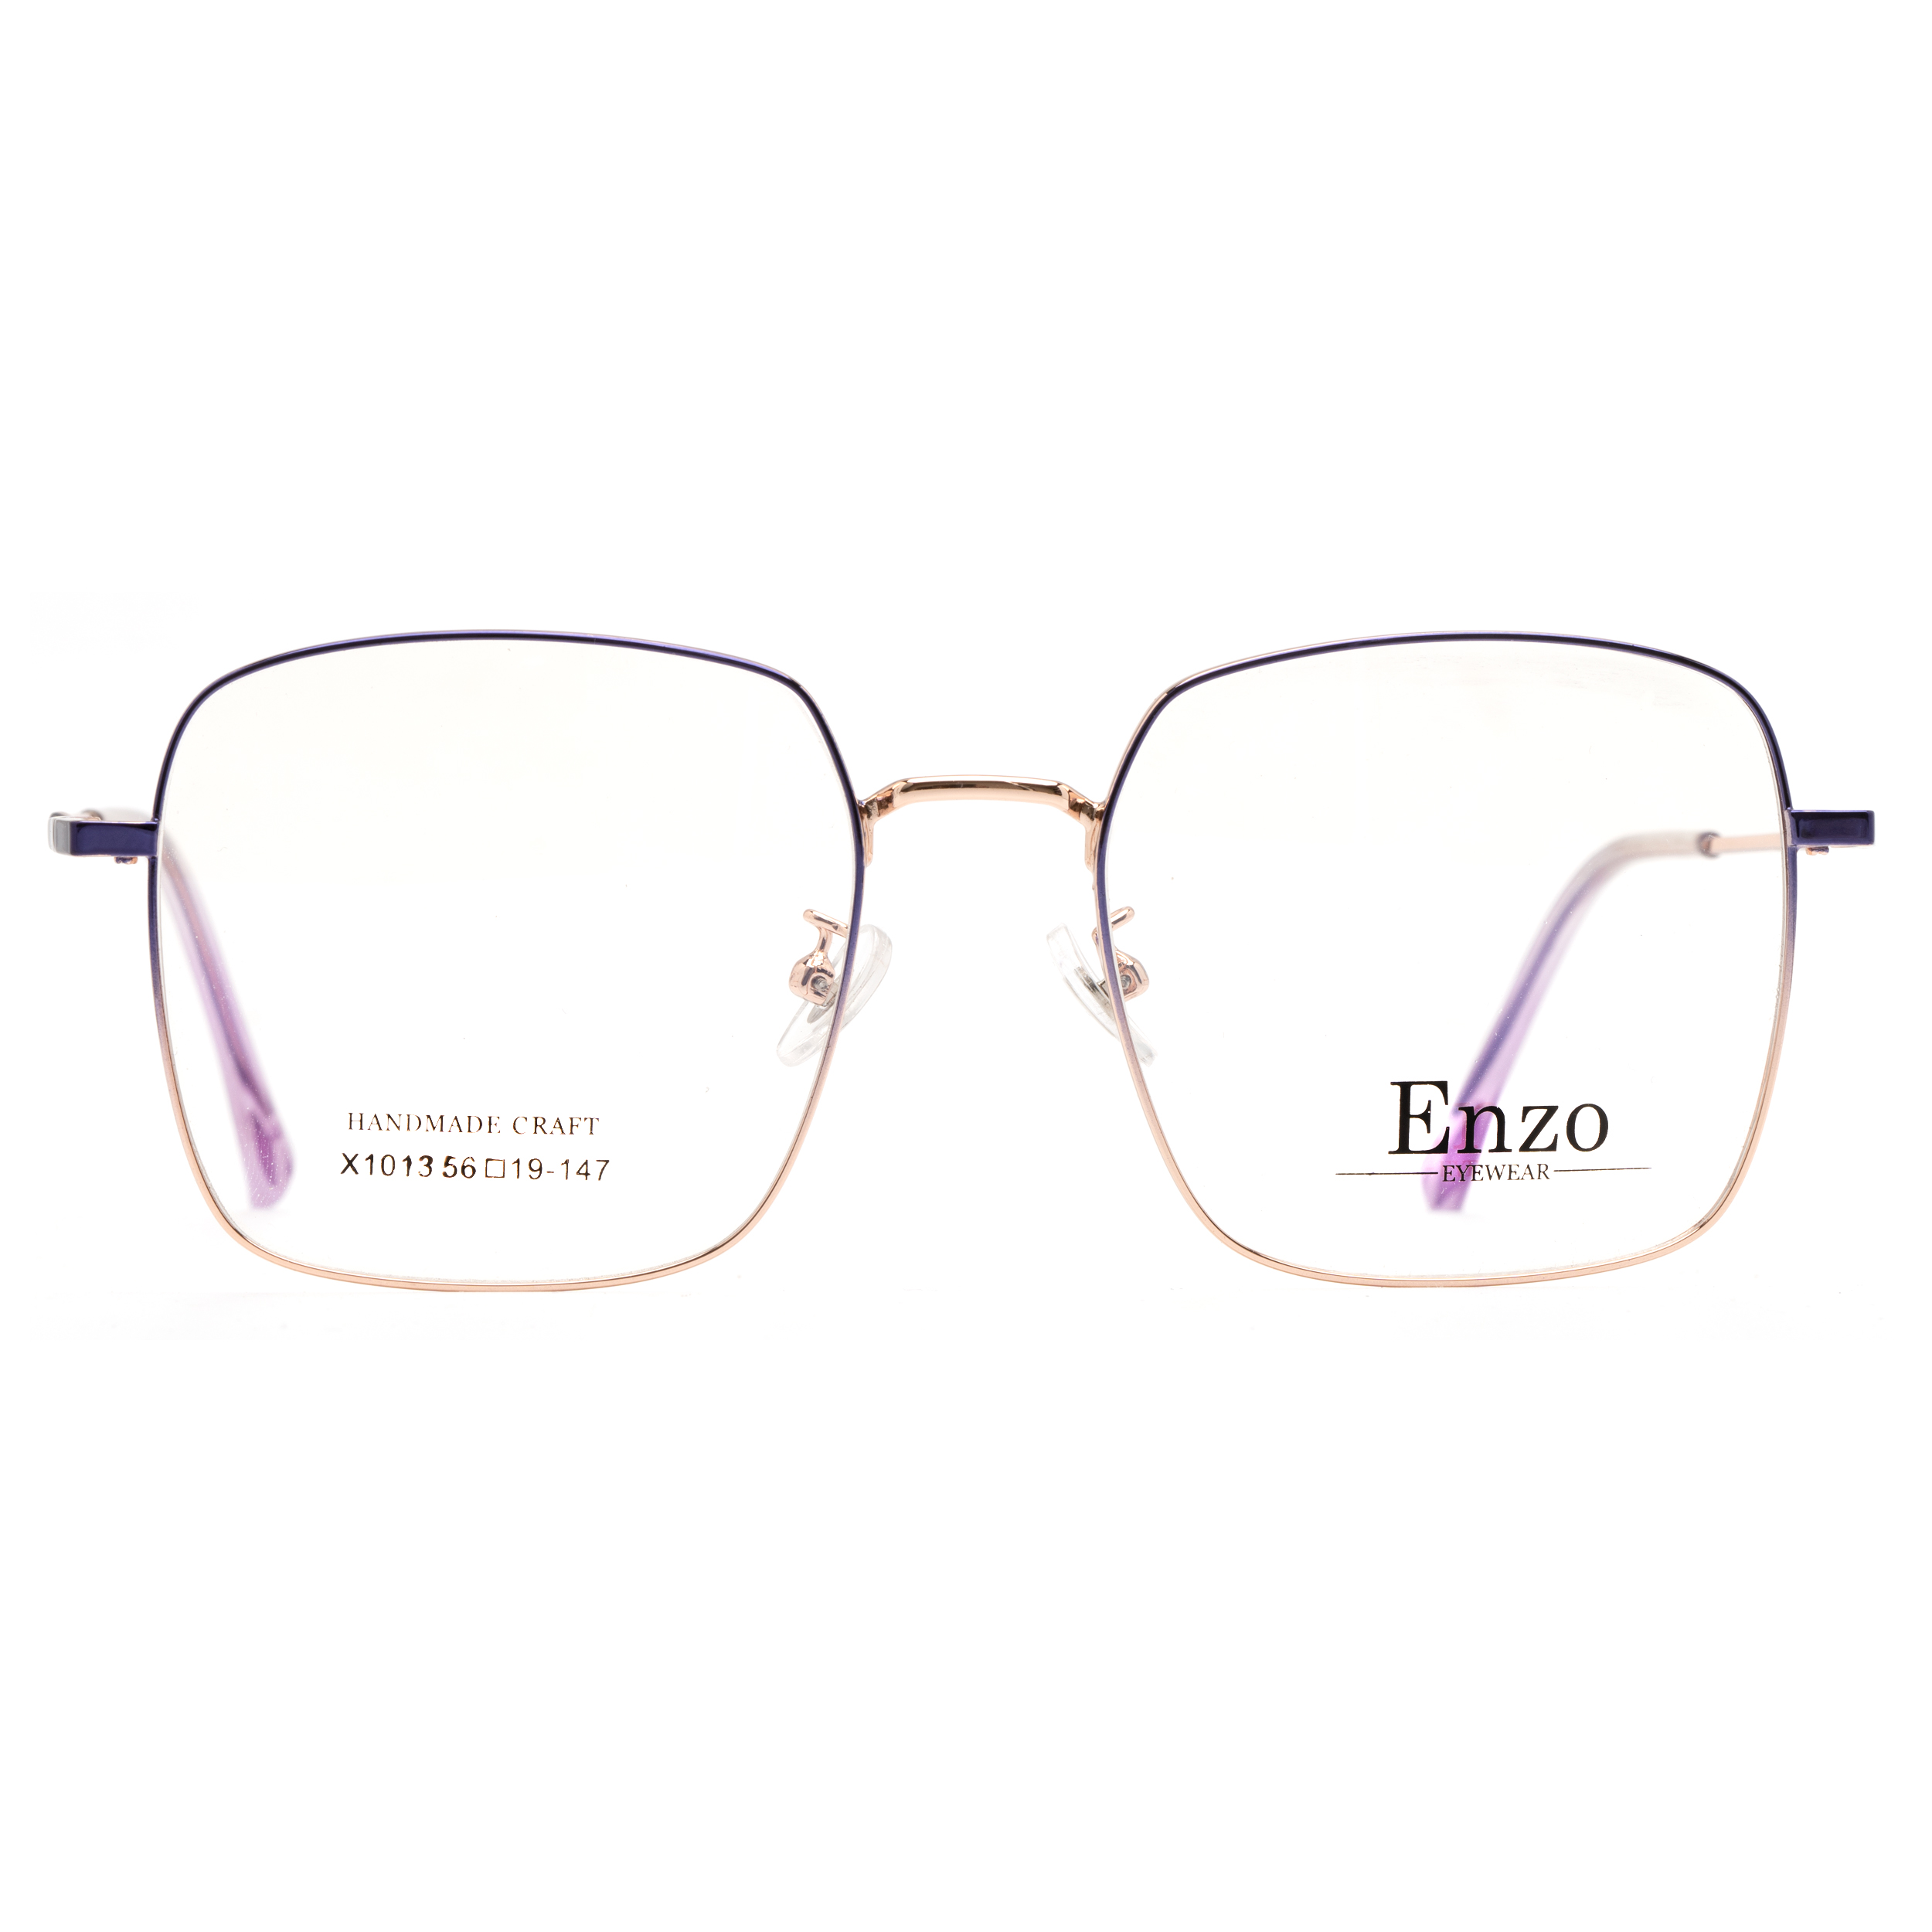 فریم عینک طبی زنانه انزو مدل X1013DT161